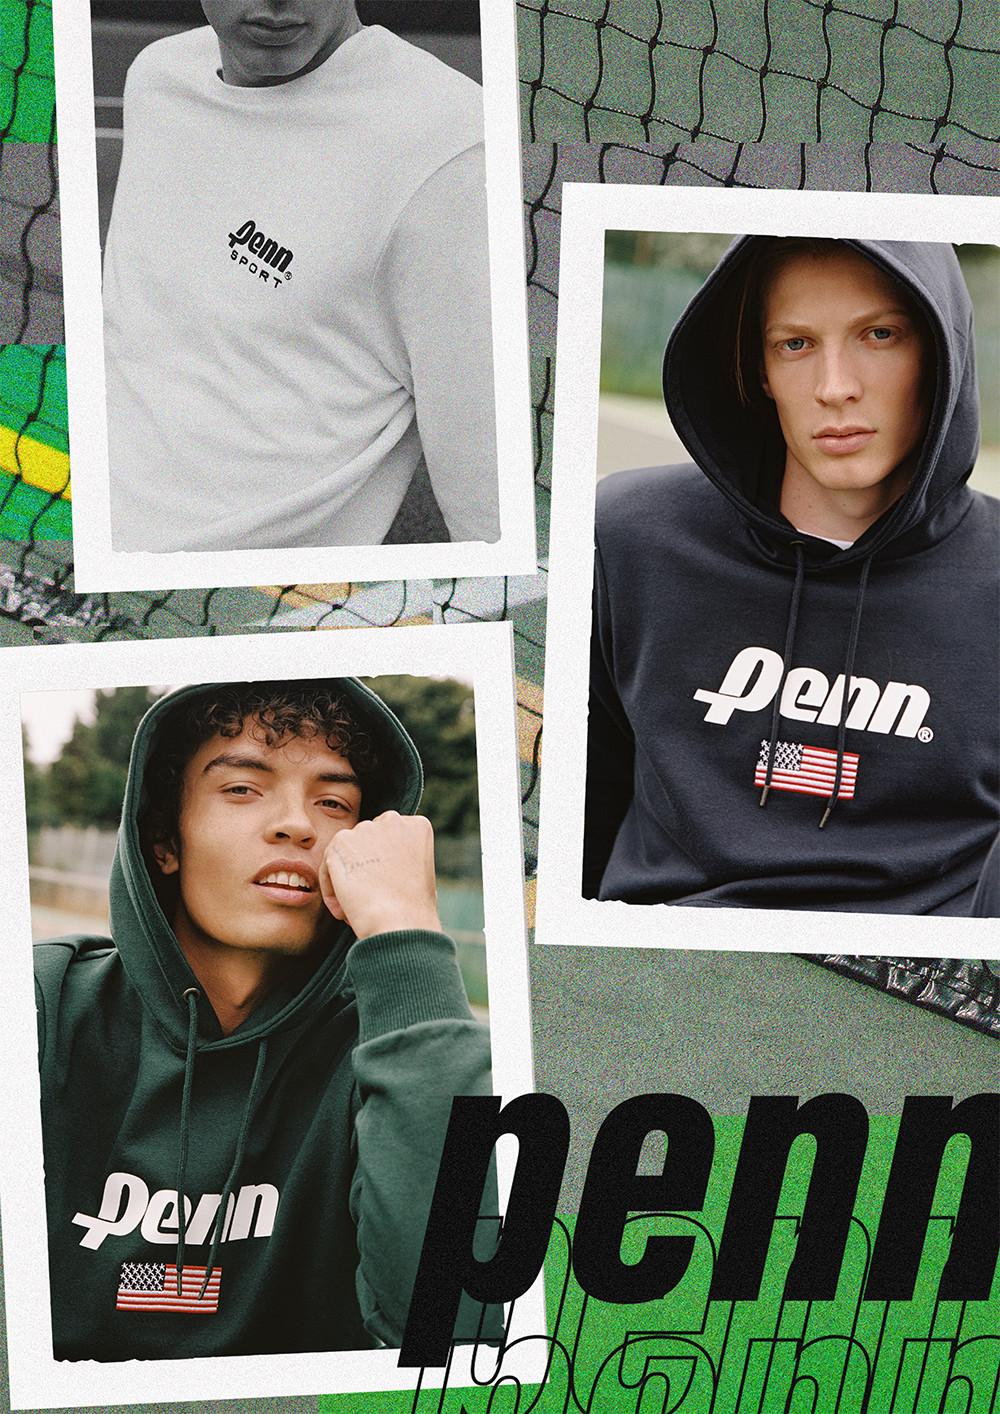 Penn hoodies